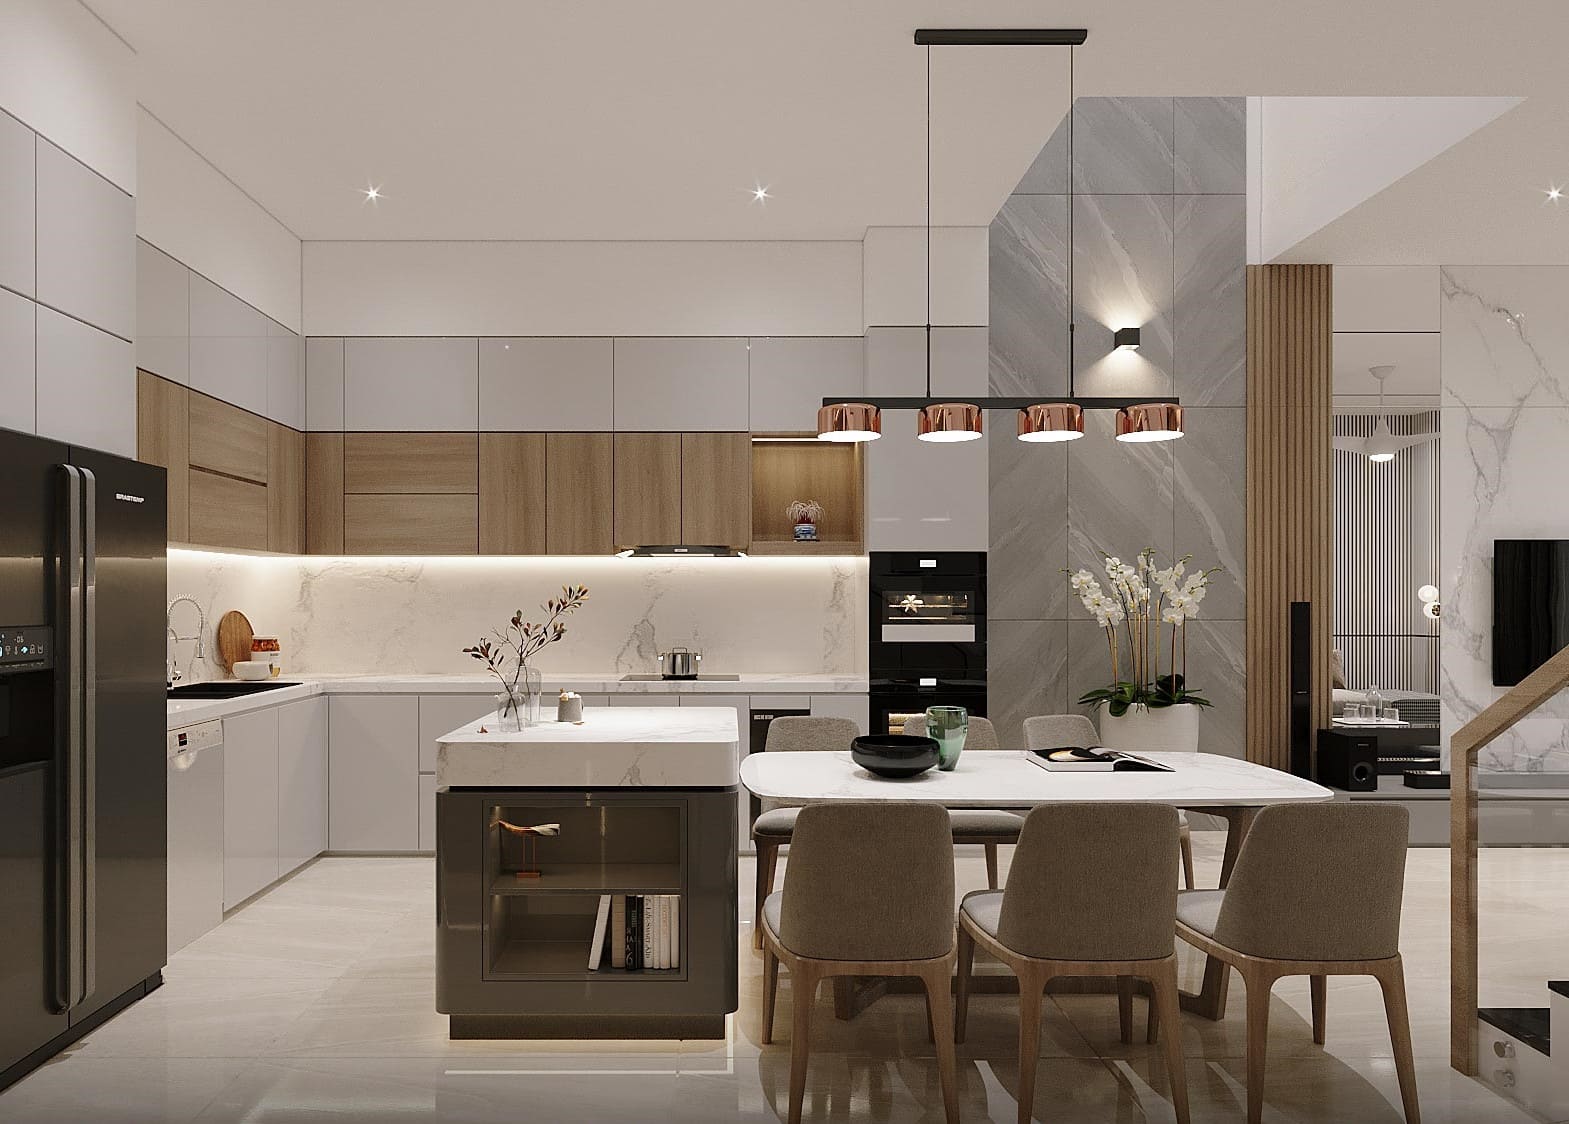 Với một chút tư duy sáng tạo và kỹ năng thiết kế, phòng bếp trong căn nhà ống 4m có thể trở thành một nơi thú vị để sáng tạo và chia sẻ bữa ăn ngon. 